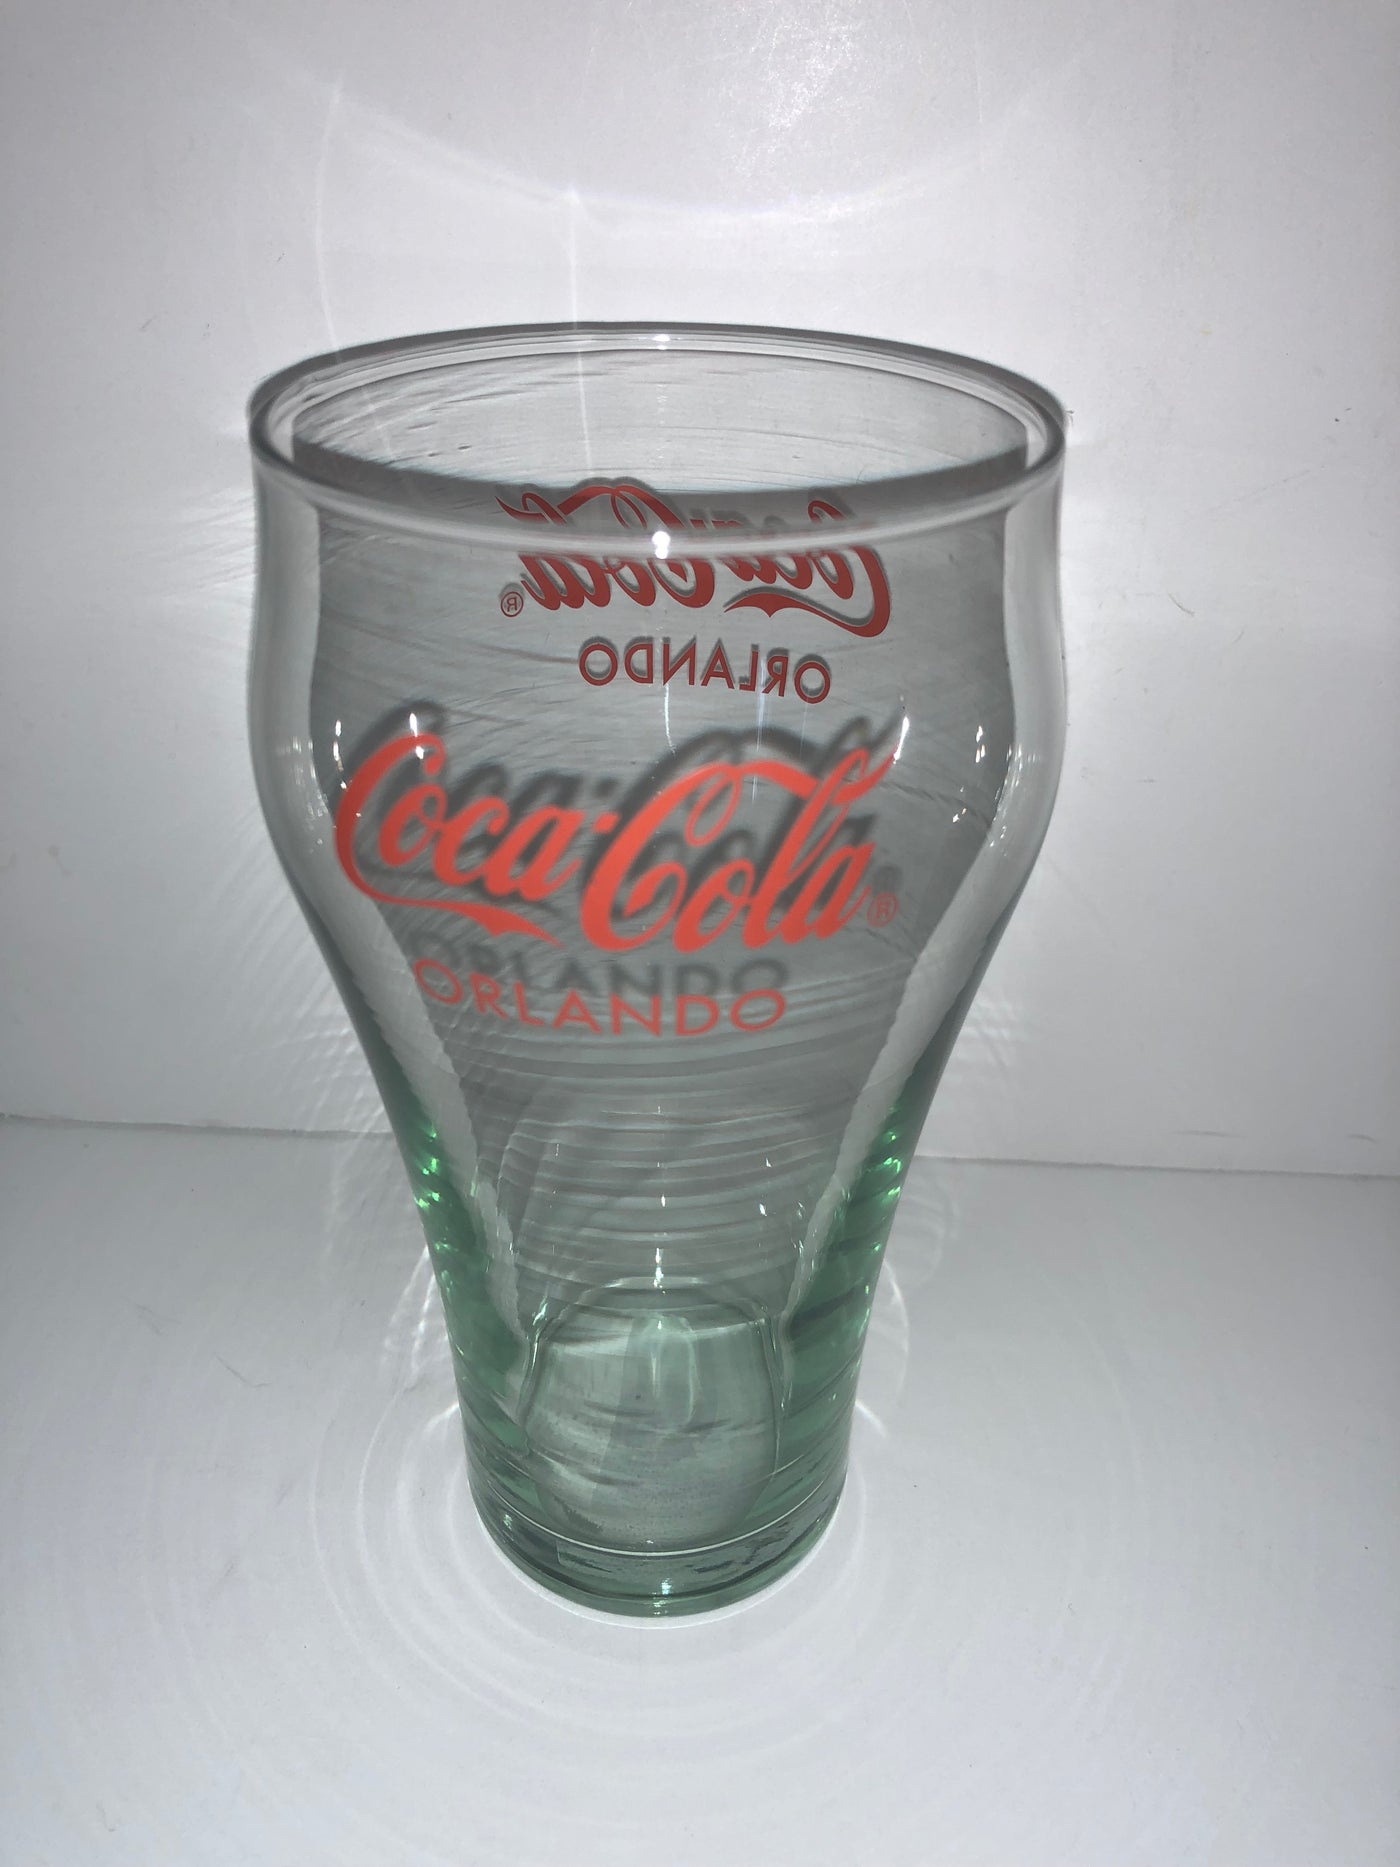 Authentic Coca-Cola Coke Soda Glass Orlando New